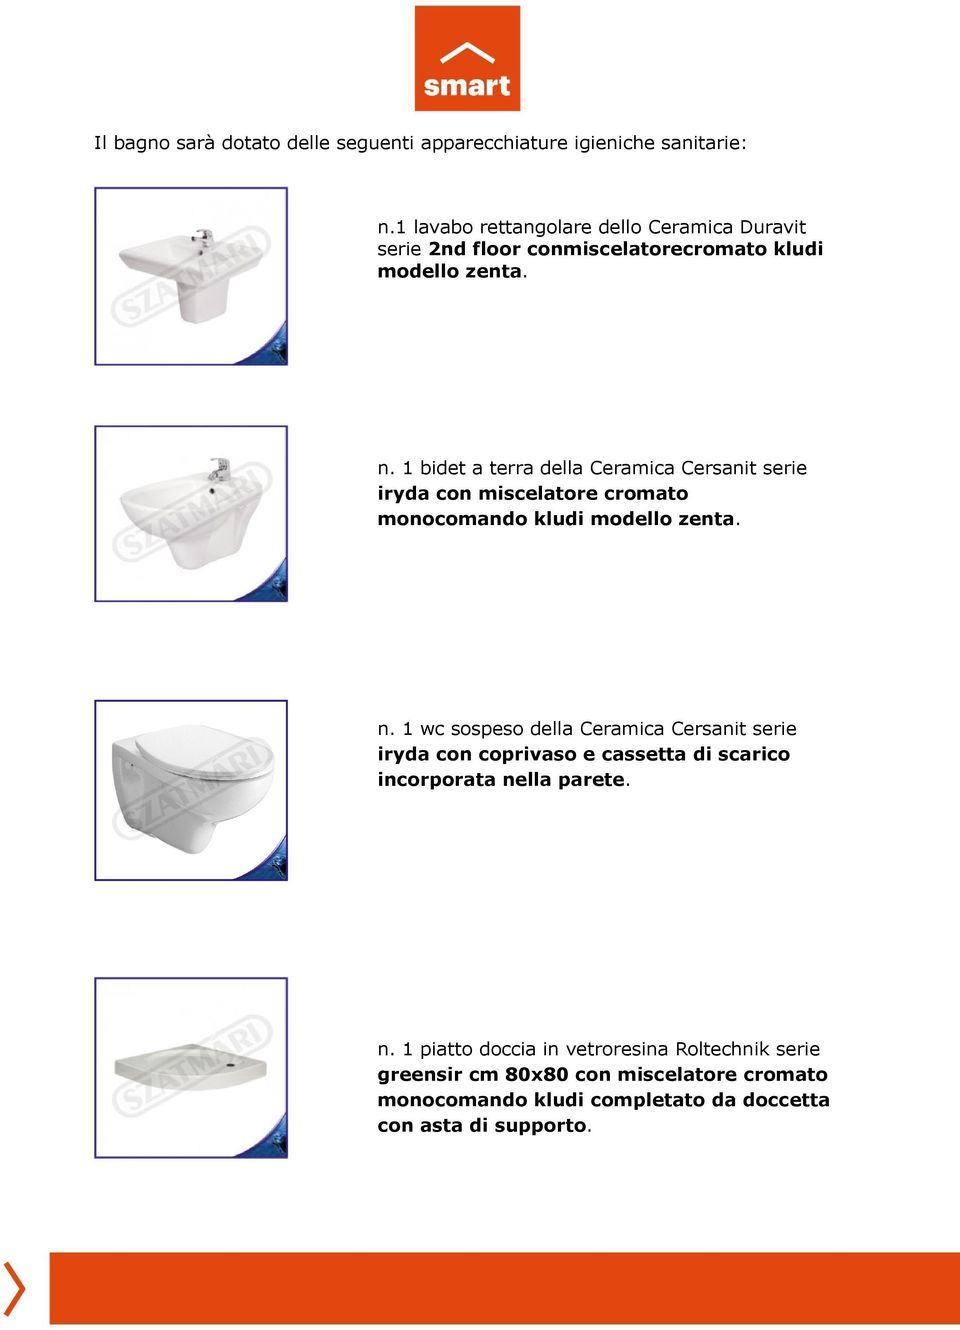 1 bidet a terra della Ceramica Cersanit serie iryda con miscelatore cromato monocomando kludi modello zenta. n.